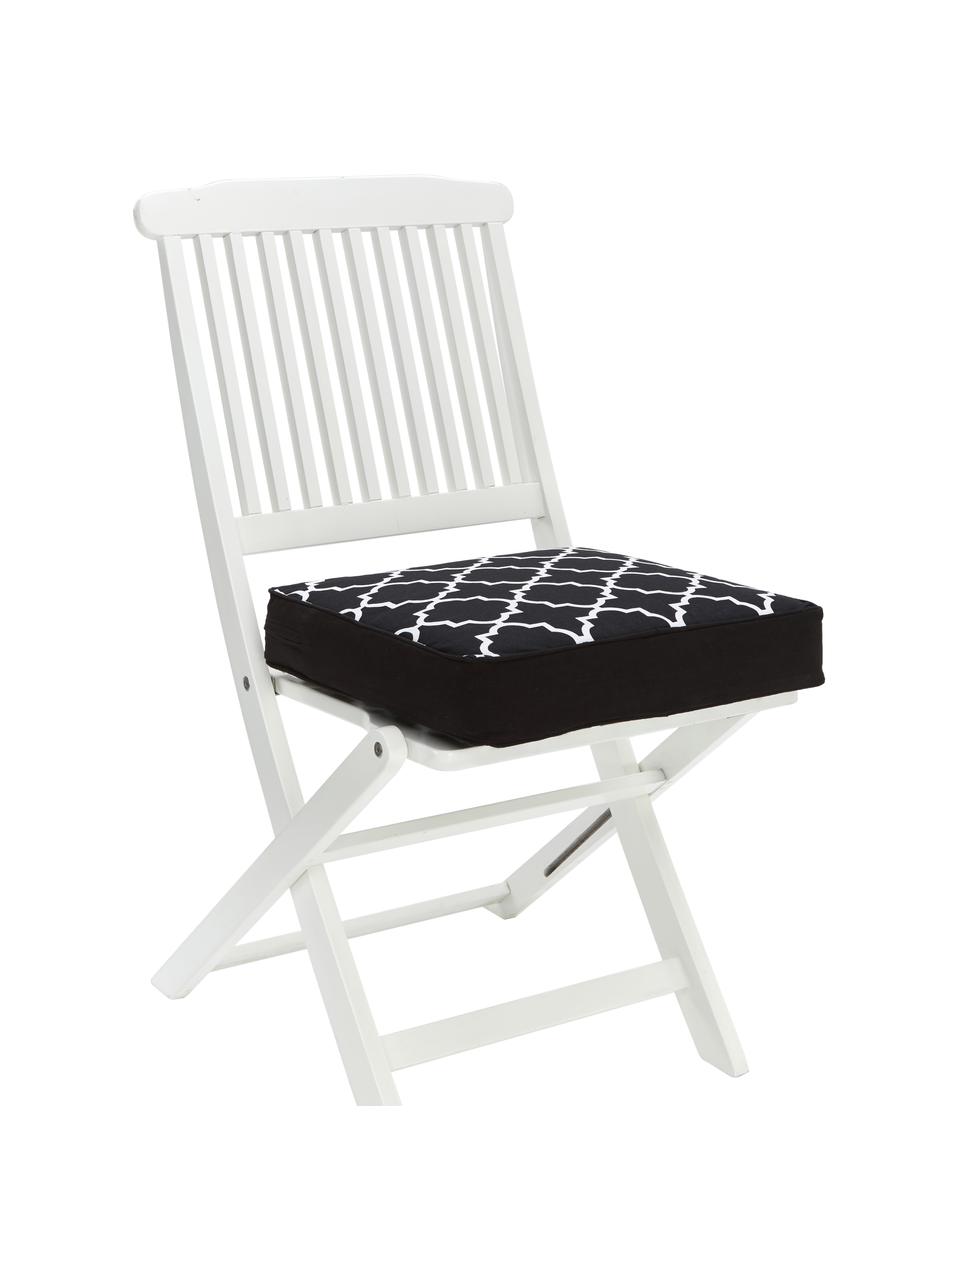 Hohes Sitzkissen Lana, Bezug: 100% Baumwolle, Schwarz, Weiß, B 40 x L 40 cm